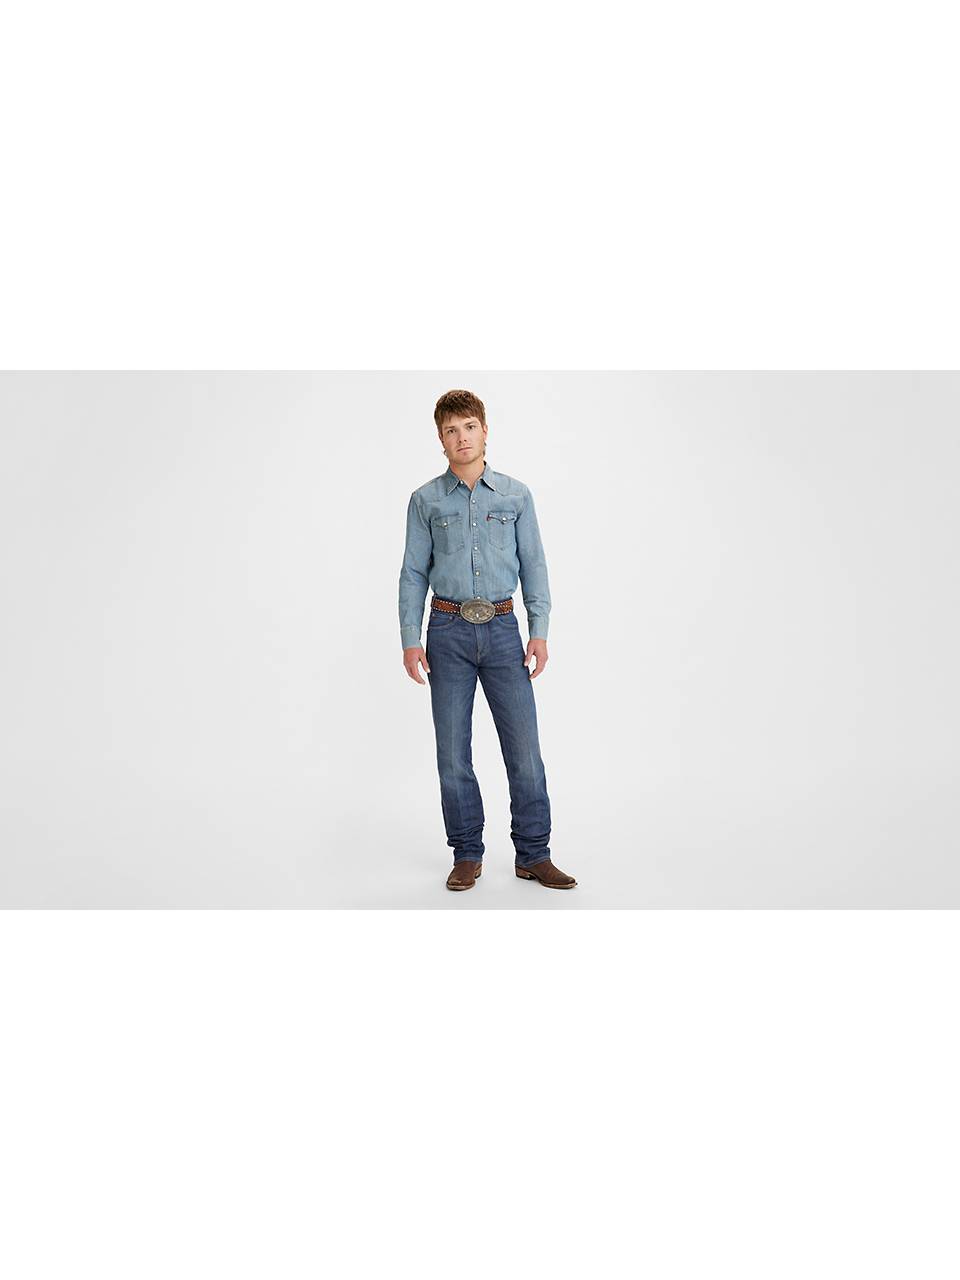 Men's Bootcut Jeans: Shop Bootcut Jeans for Men| Levi's® US